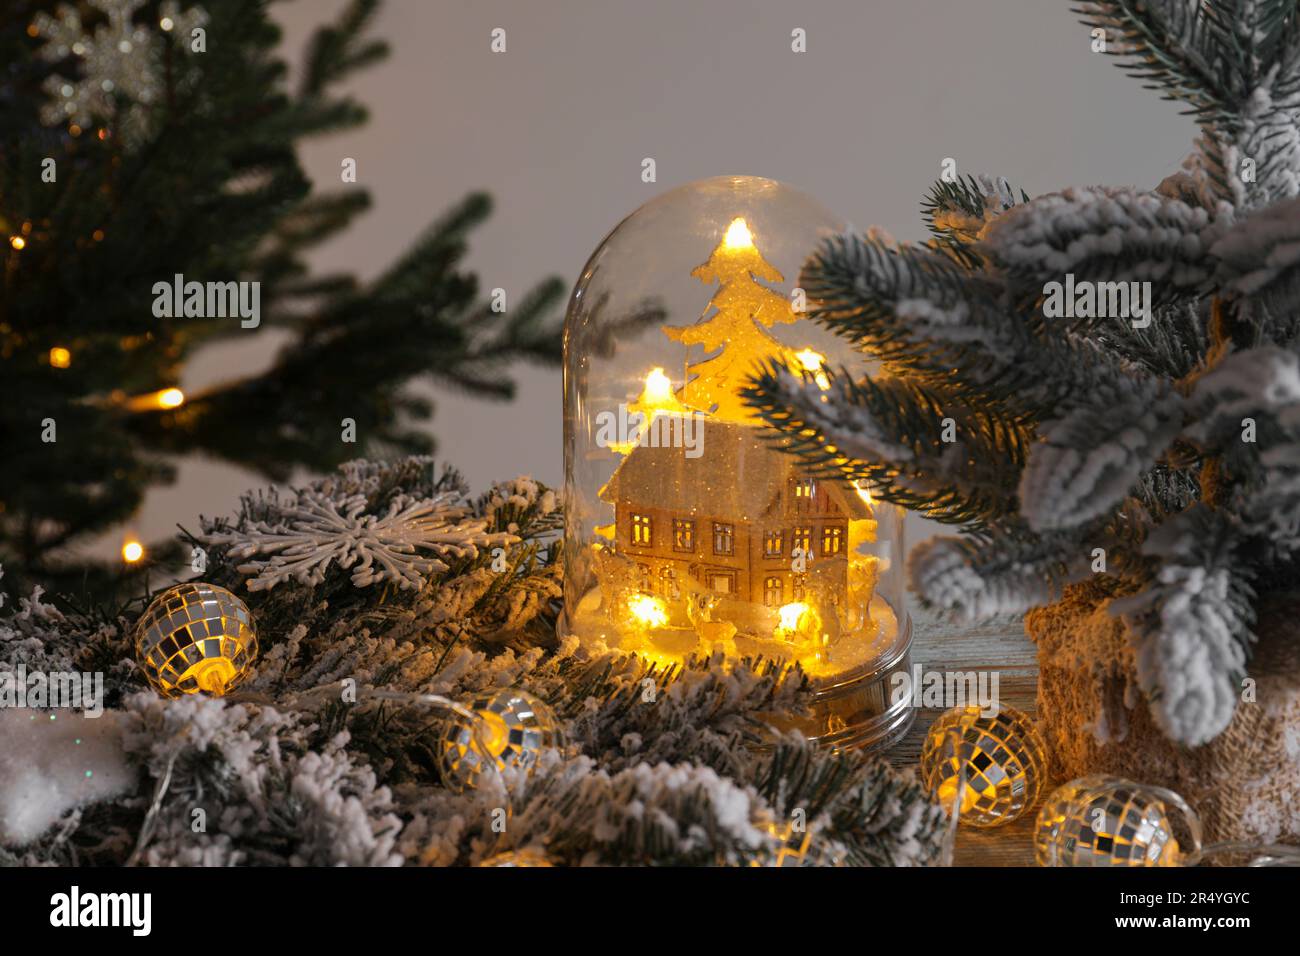 Hermoso globo de nieve con modelo de casa, luces de hadas brillantes en el interior y decoración de Navidad en la mesa de madera Foto de stock